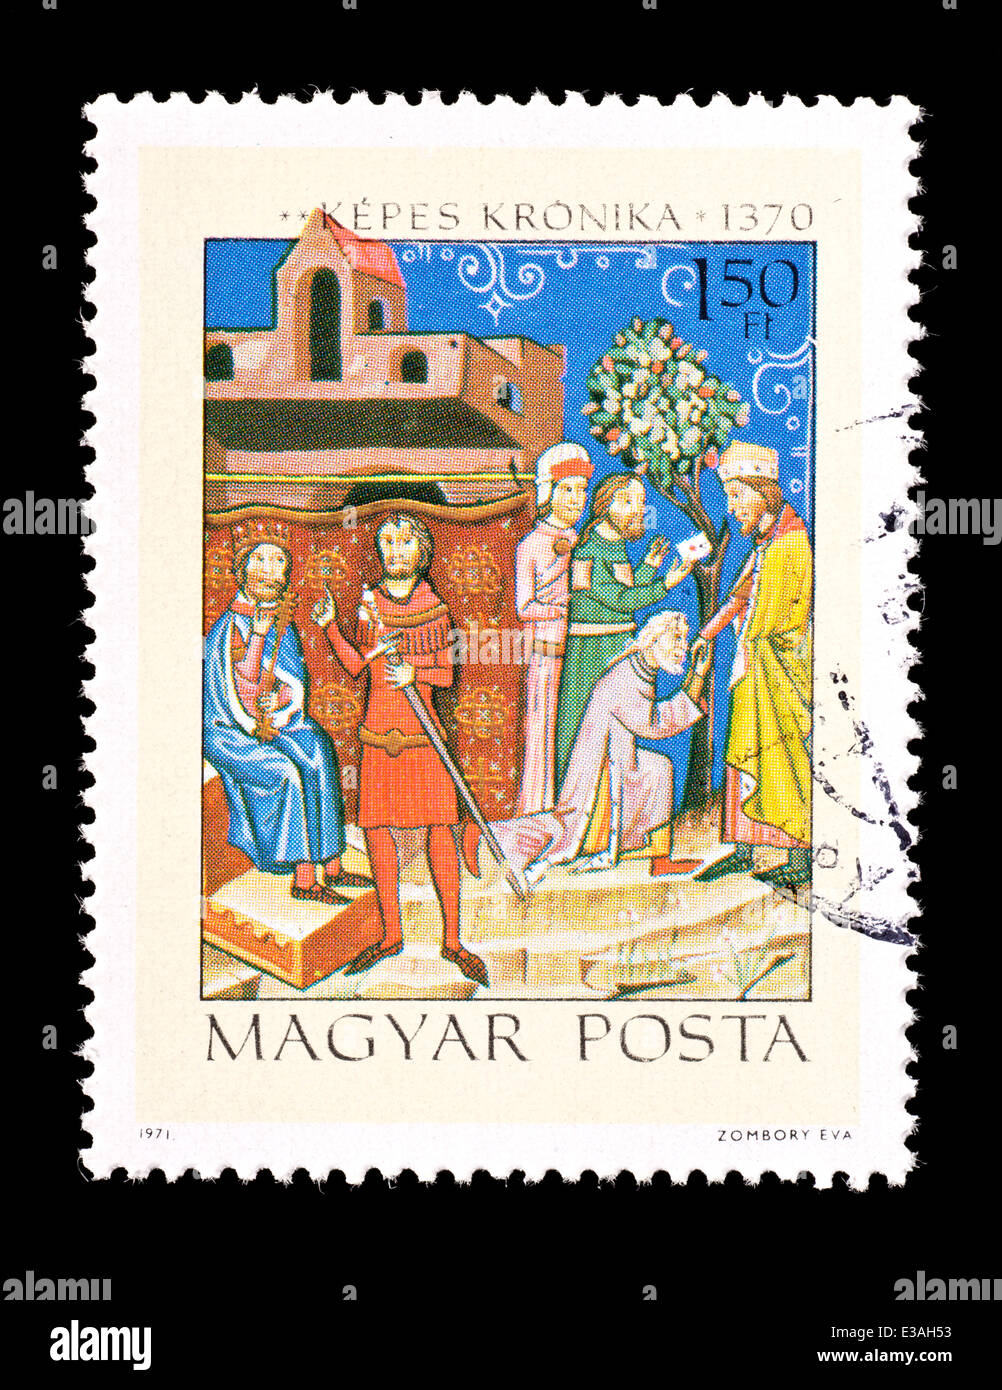 Timbre hongrois montrant les conflits entre le roi Salomon et le Prince Geza chronique illustrée de miniatures du roi Louis le Grand Banque D'Images